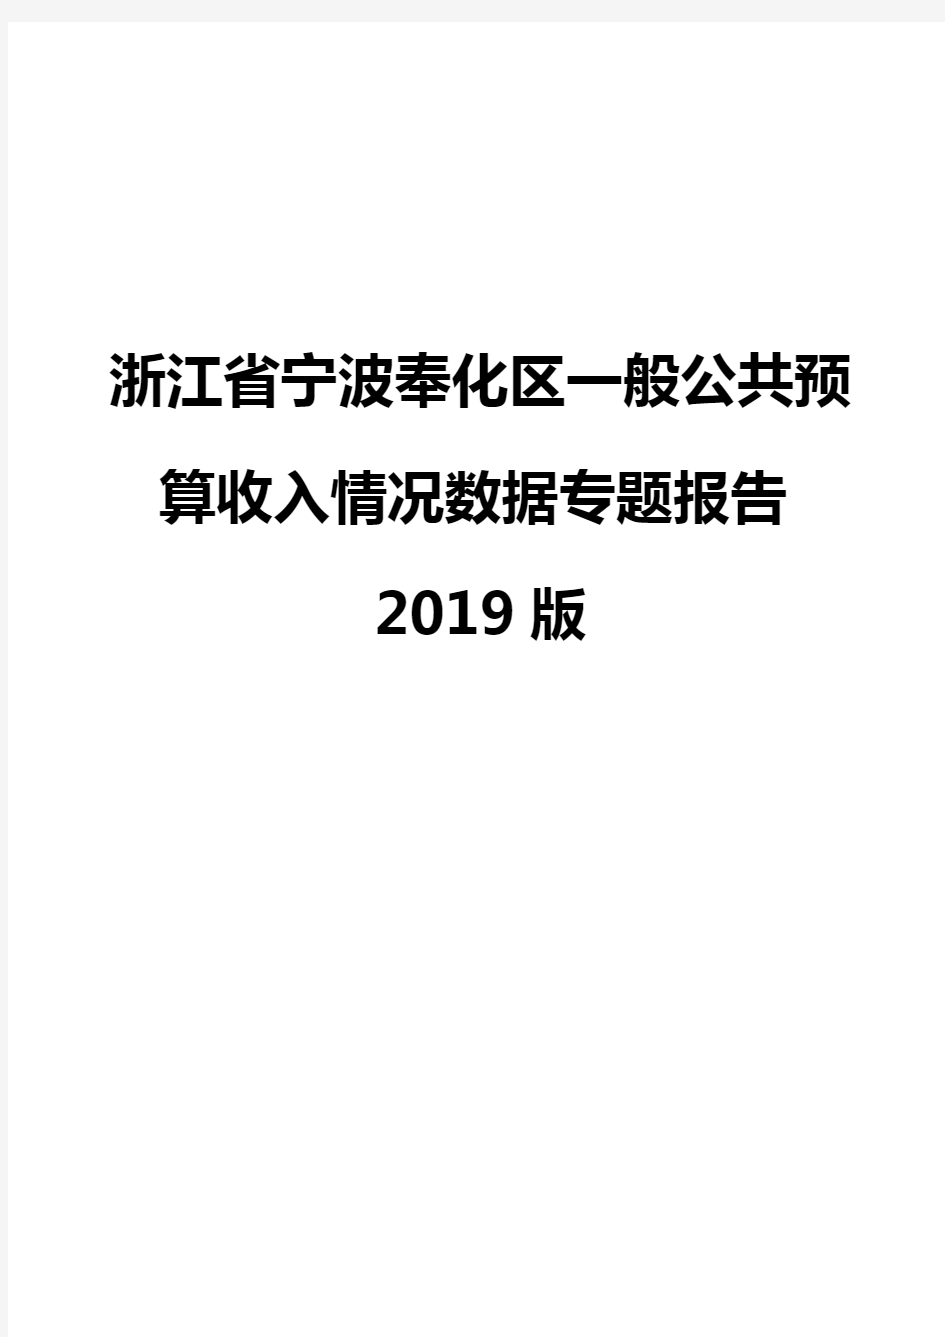 浙江省宁波奉化区一般公共预算收入情况数据专题报告2019版